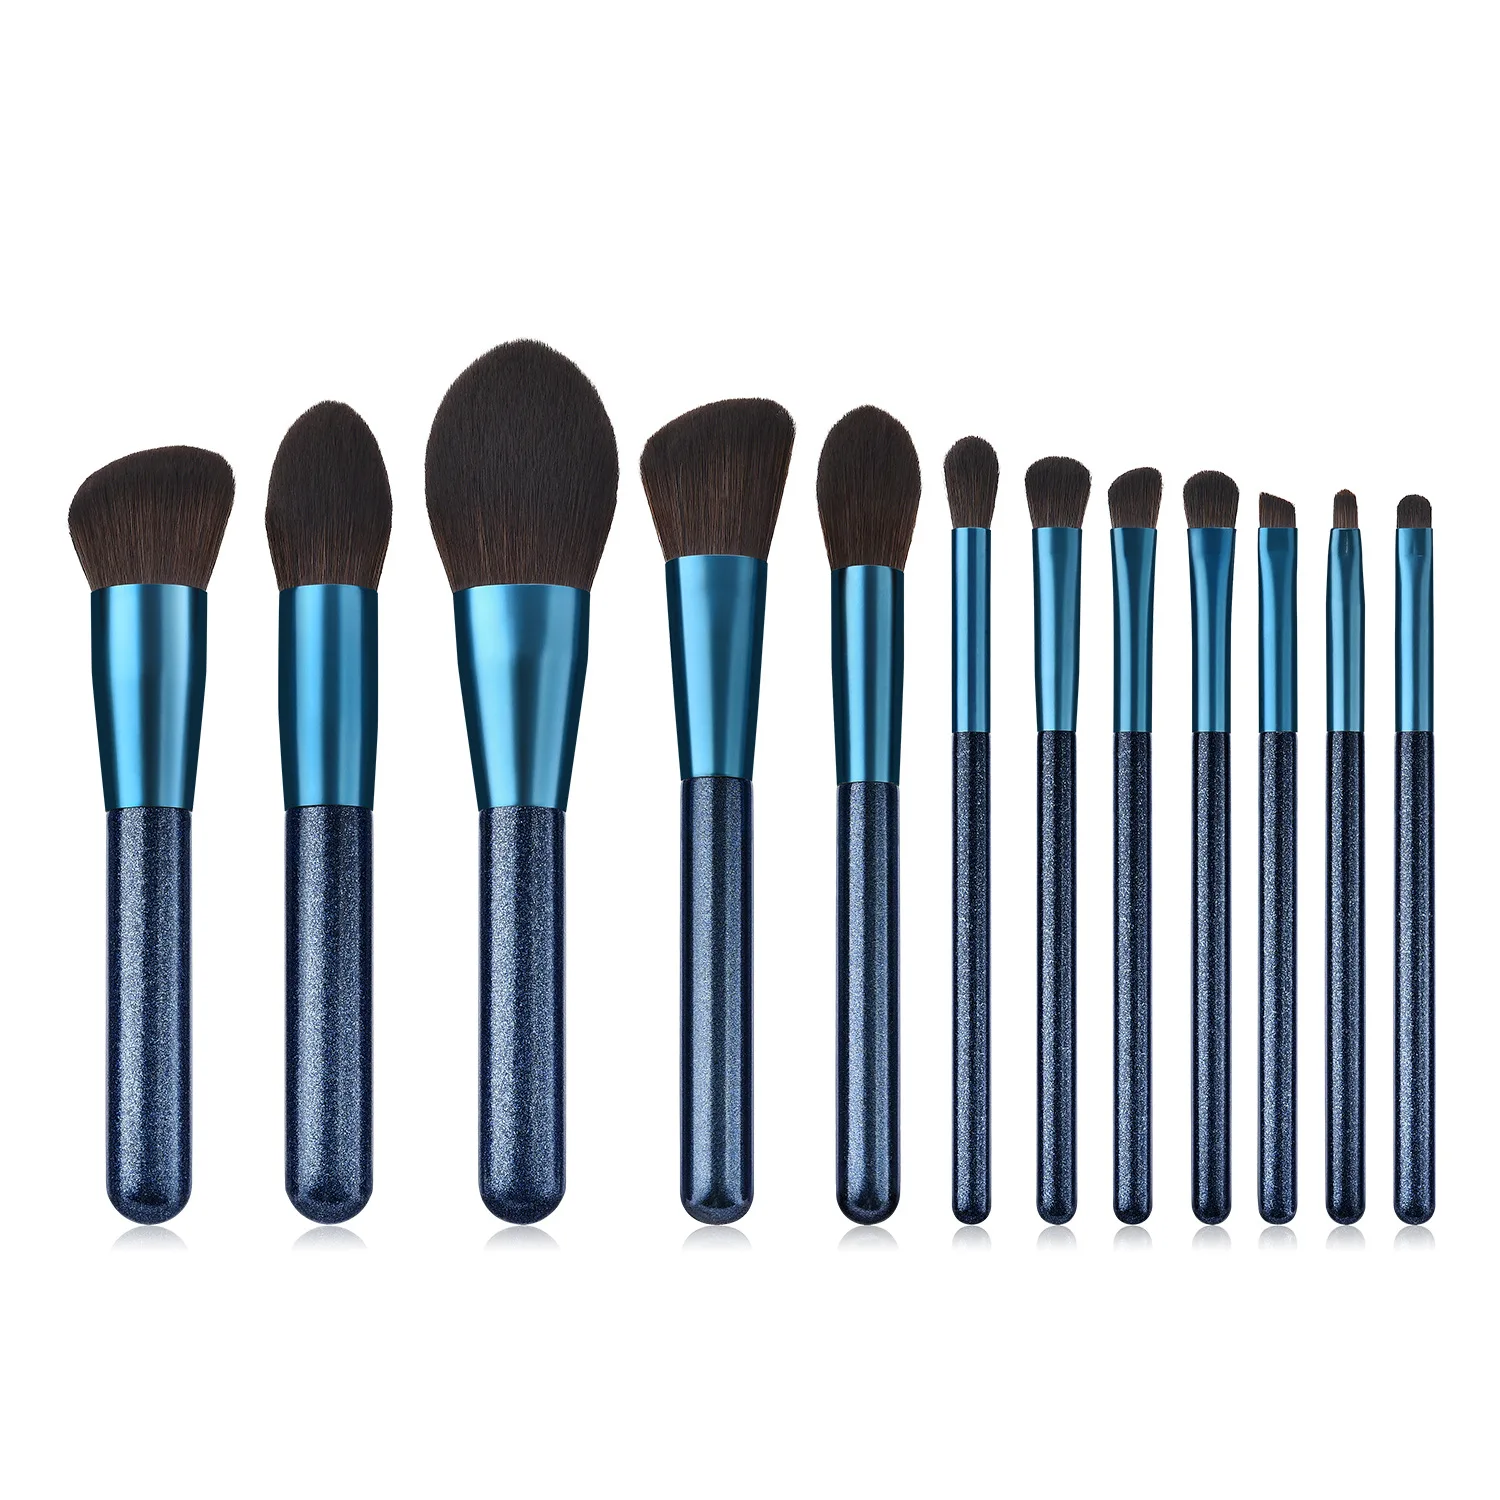 Wood Handle Makeup Brushes Set Blush Powder Foundation Eye Eyeliner Eyebrow Face Make Up Brush Cosmetic Tools Kit